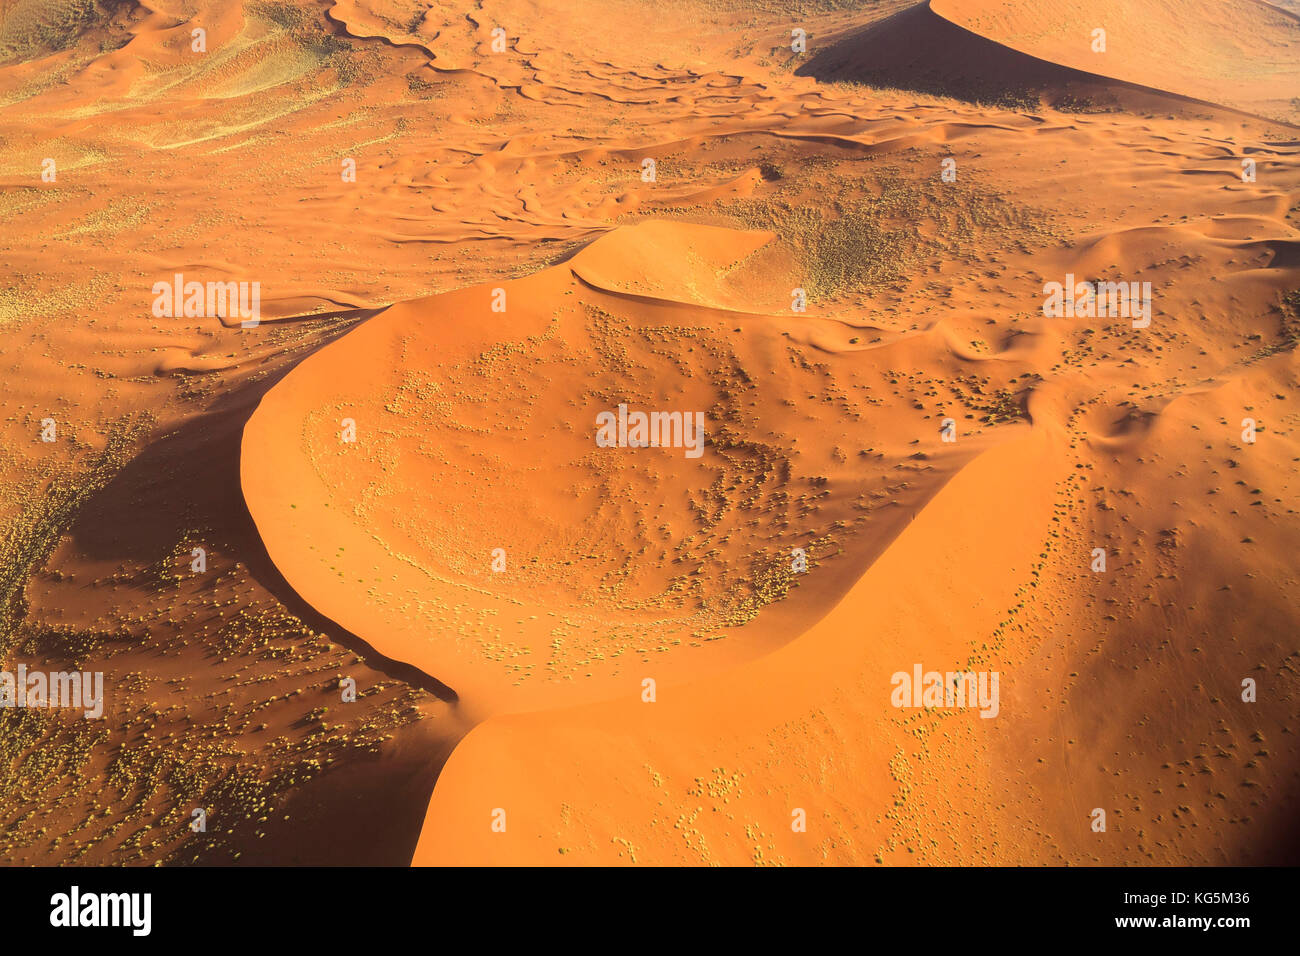 Vue aérienne des dunes de sable modelé par le vent du désert du namib Namibie Afrique du Sud Banque D'Images